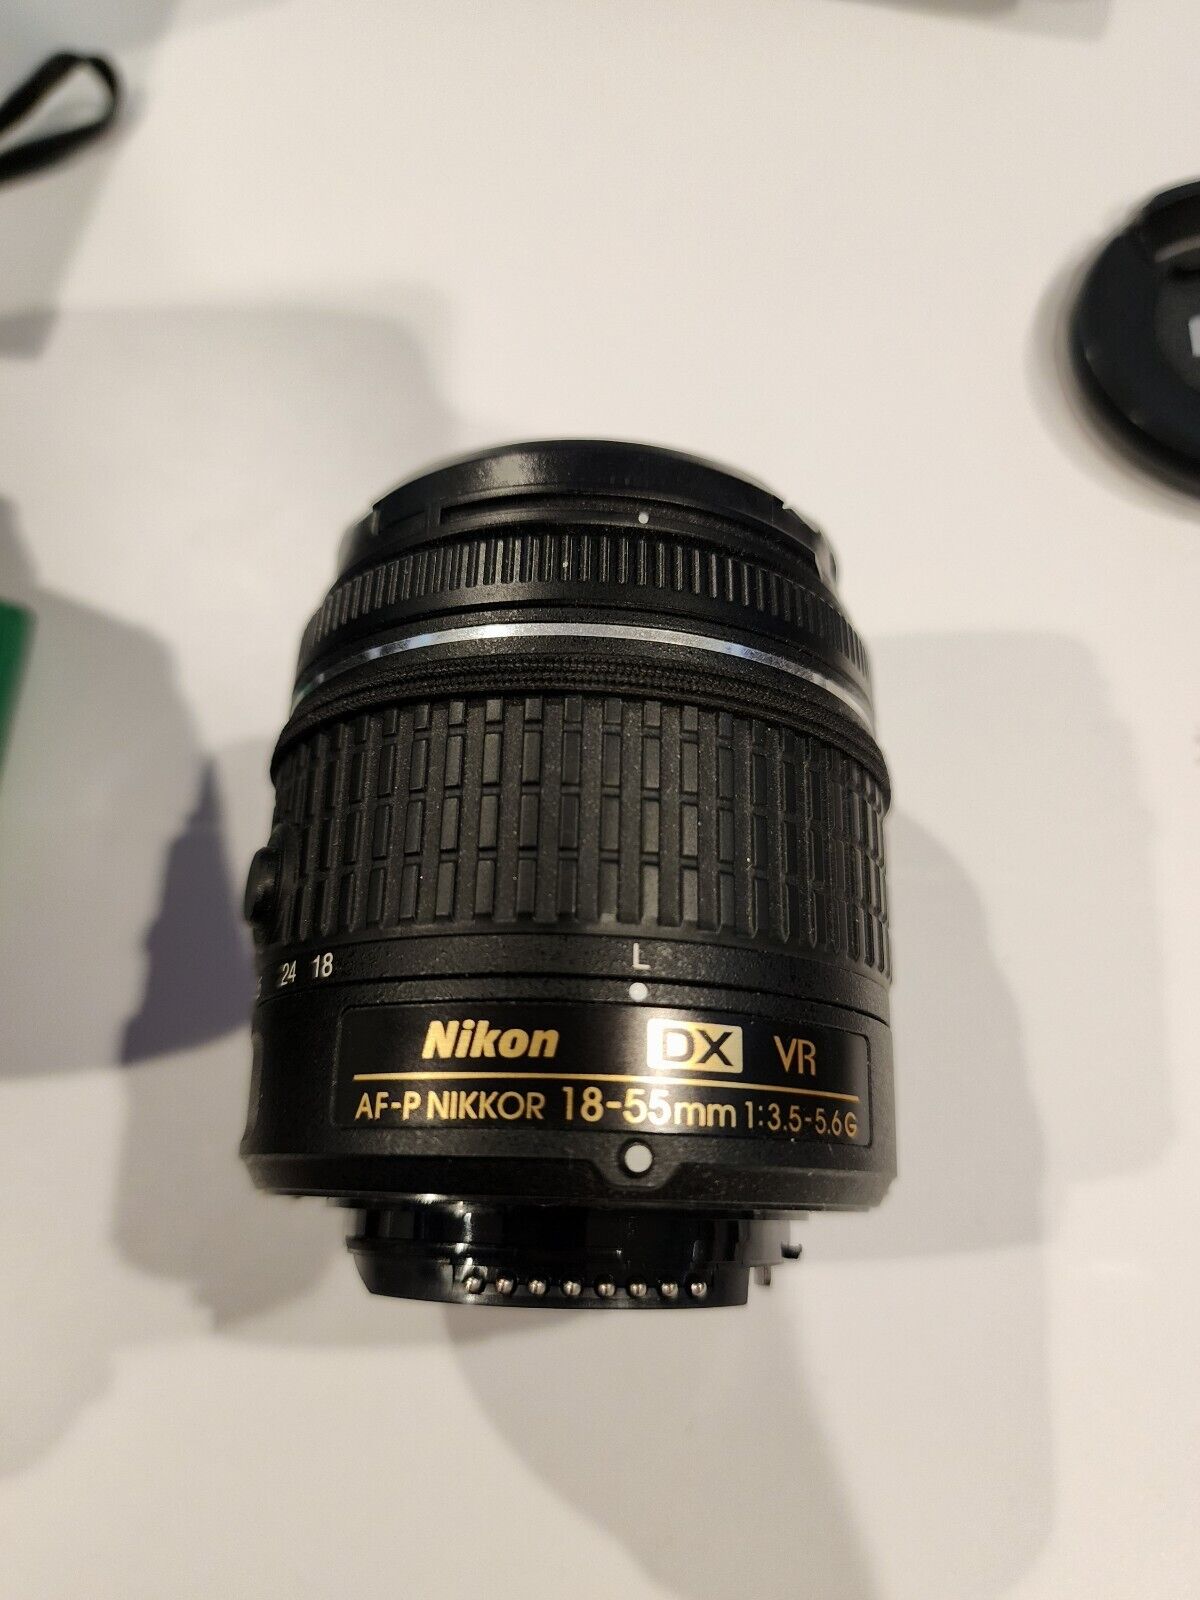 Nikon D3400 24,2MP DSLR Camera - Black (Kit with 18-55mm f/3.5-5.6G VR Lens)